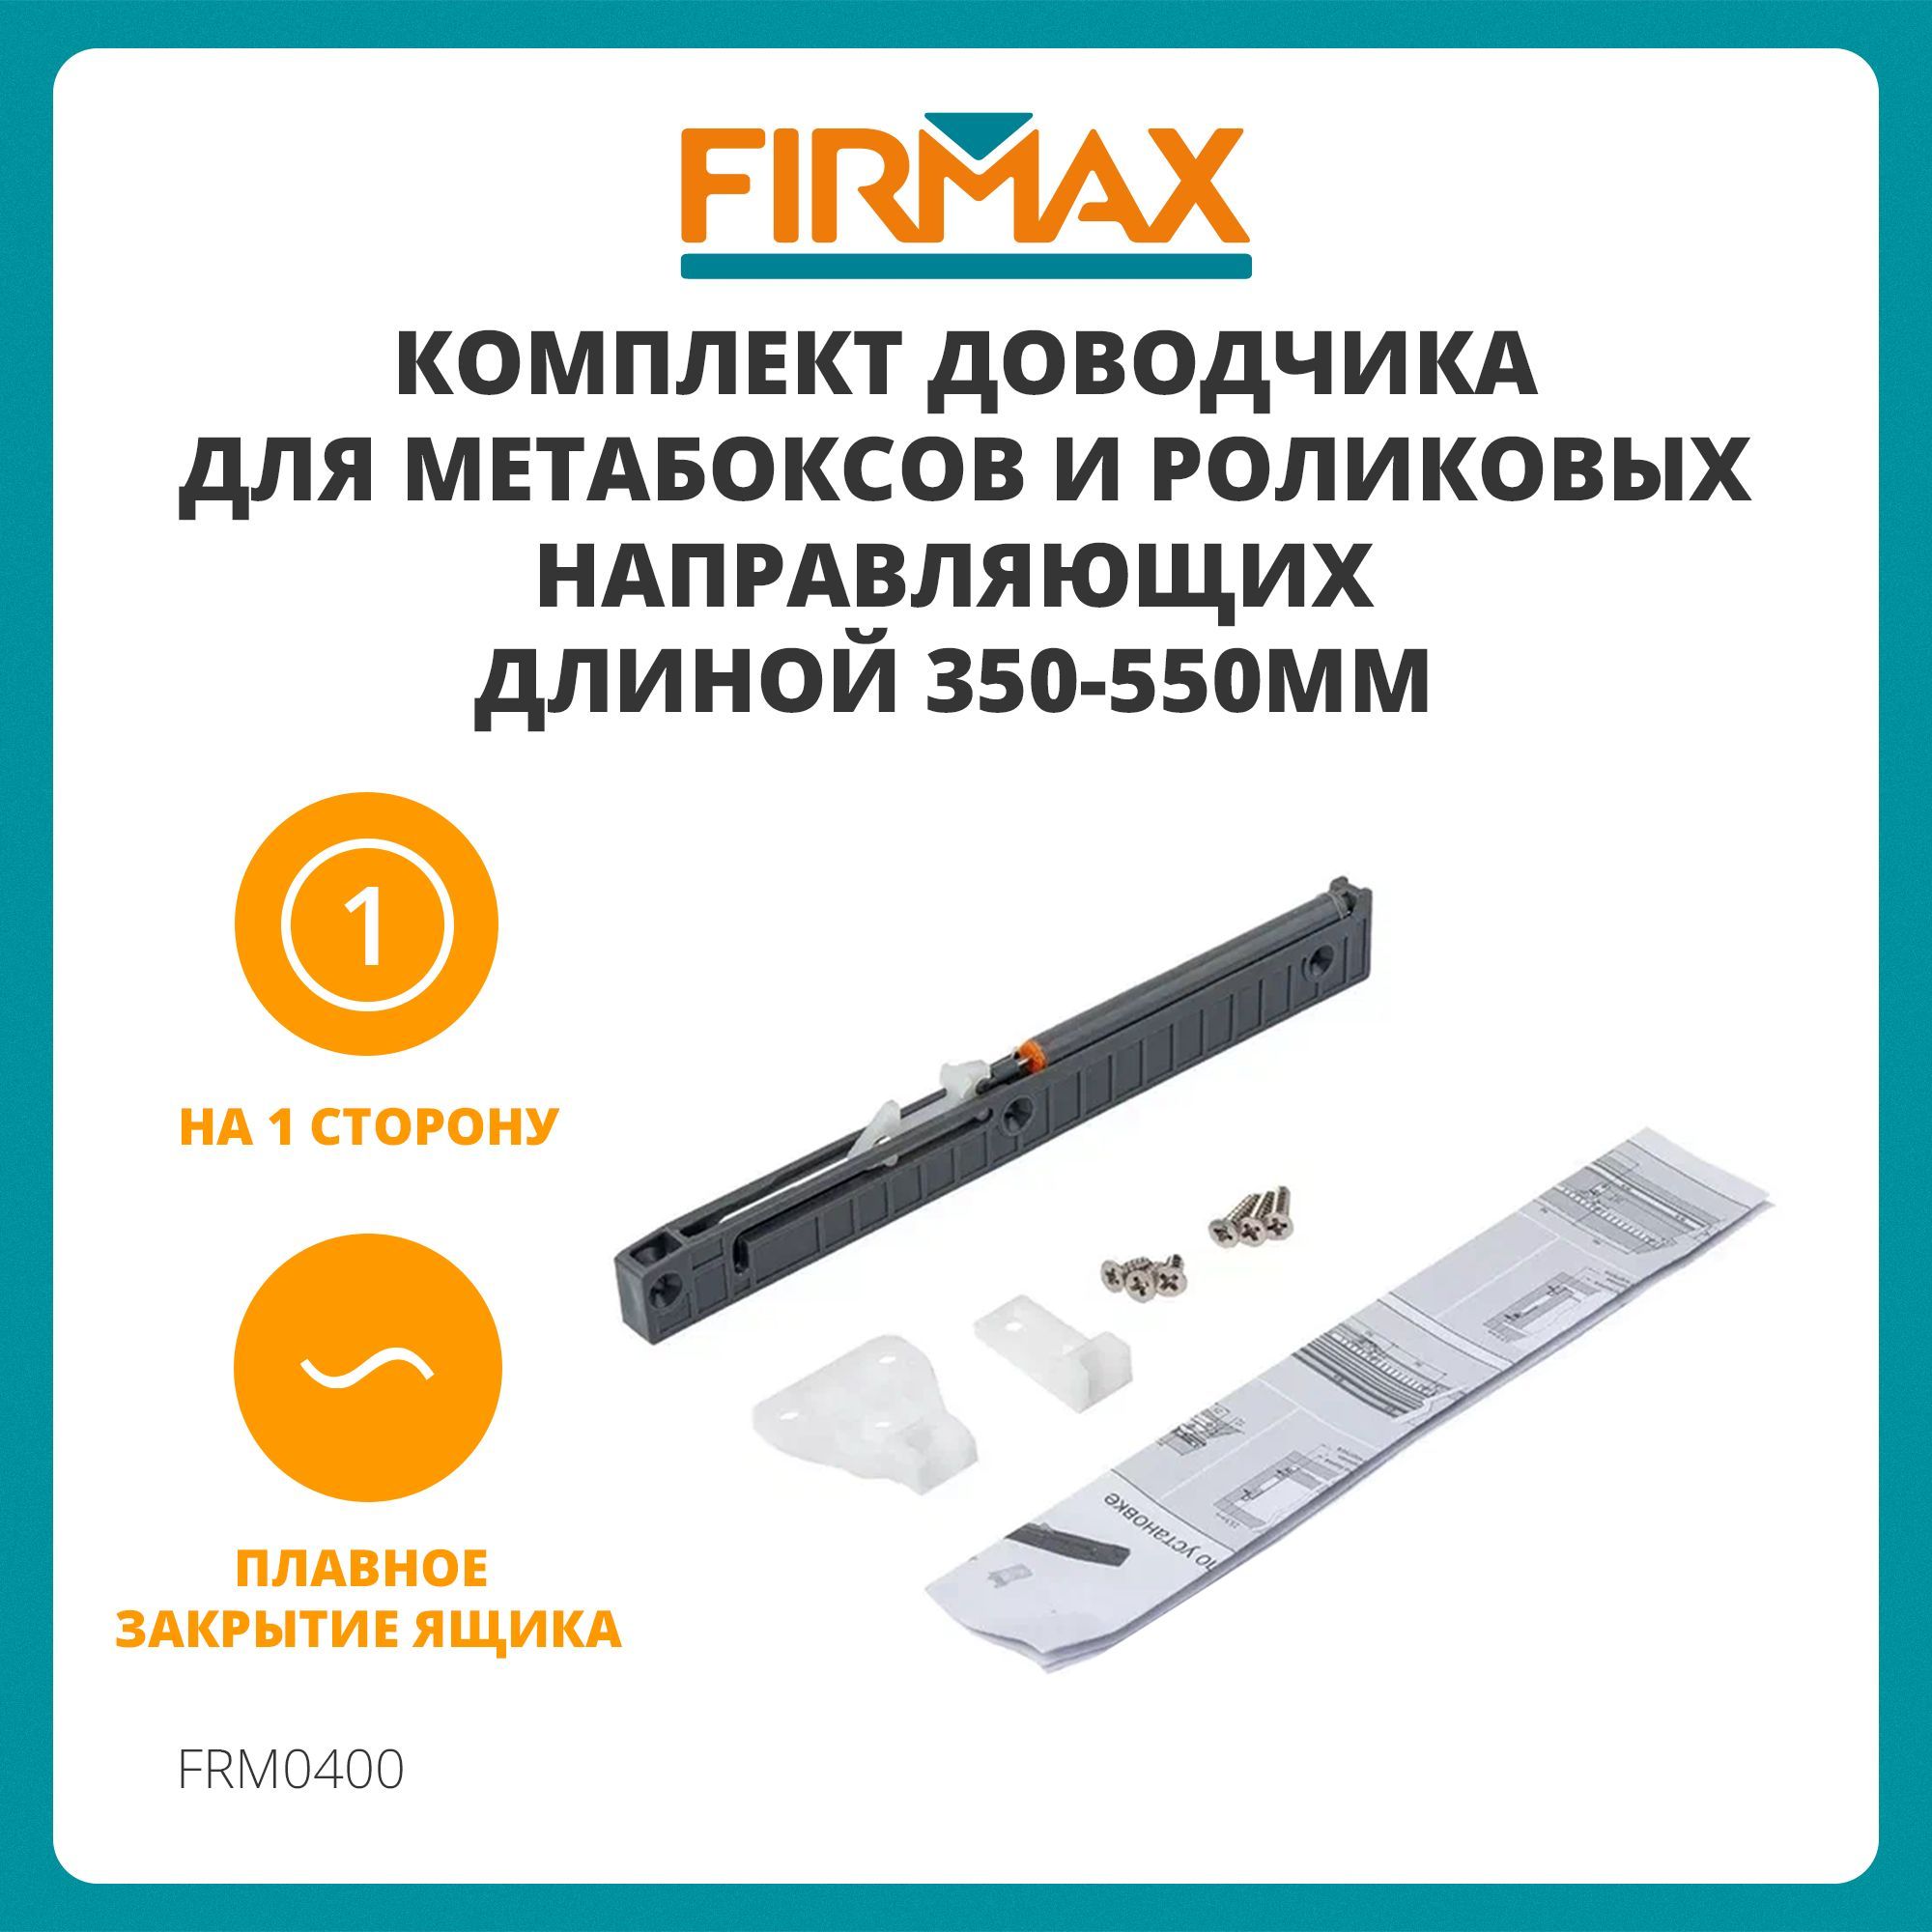 КомплектдоводчикаFirmax(на1сторону)дляметабоксовироликовыхнаправляющихдлиной350-550мм